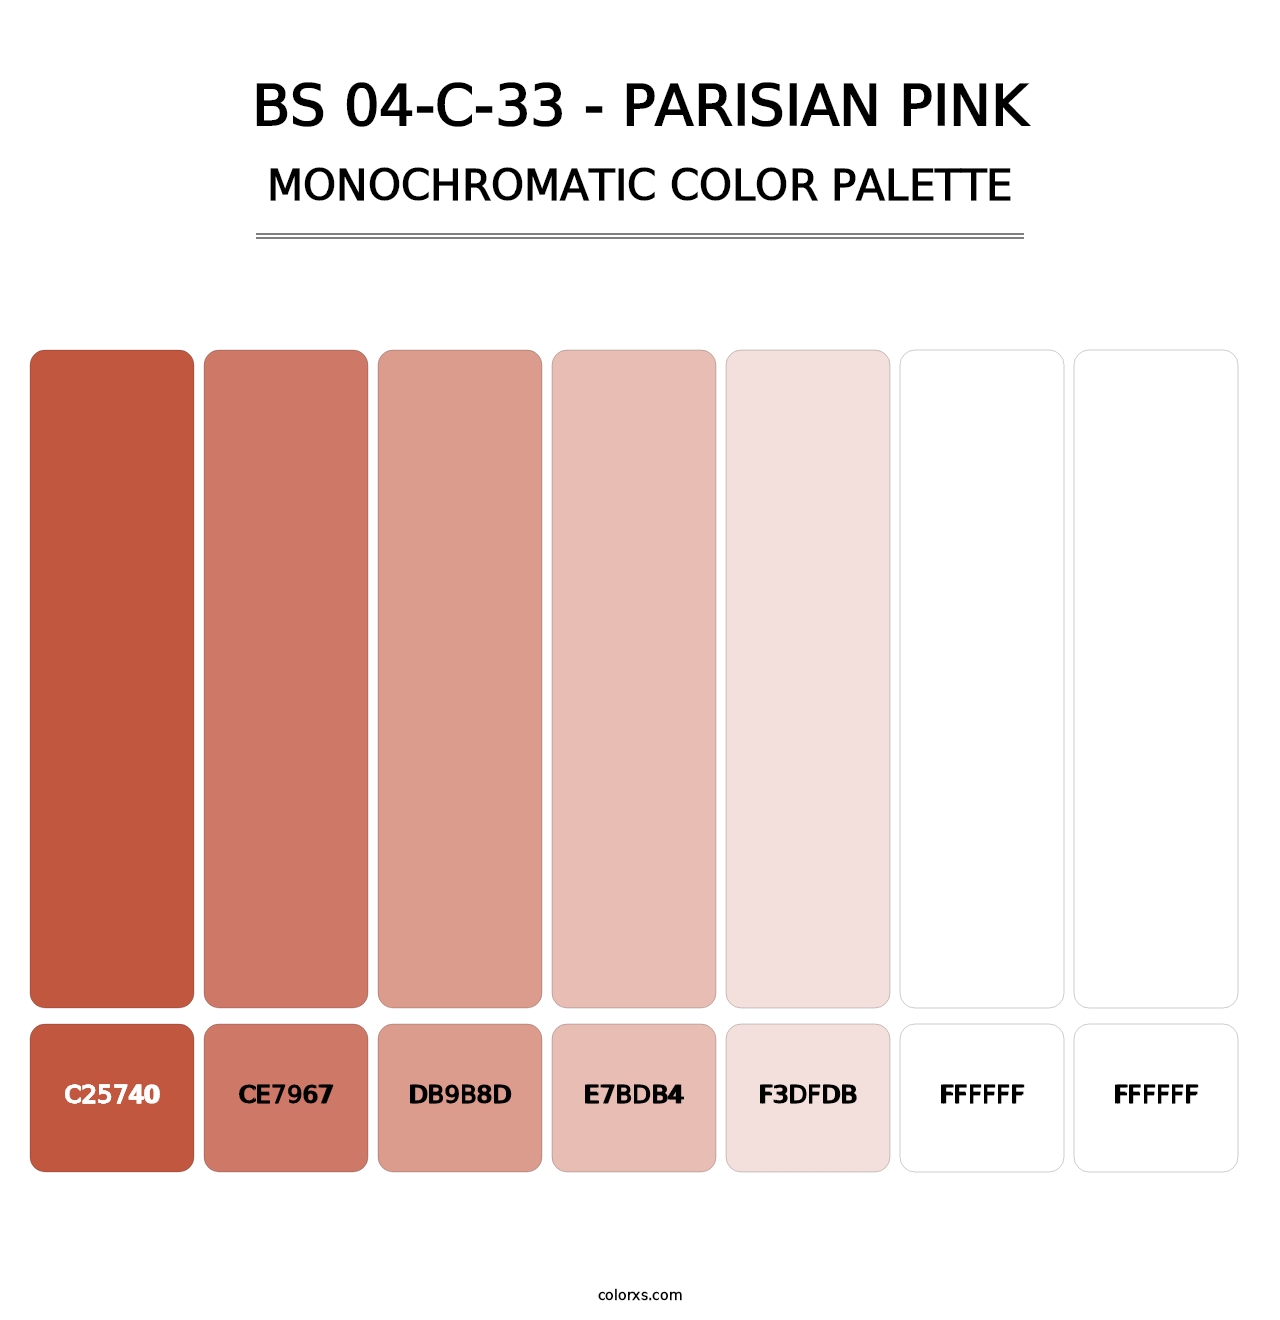 BS 04-C-33 - Parisian Pink - Monochromatic Color Palette